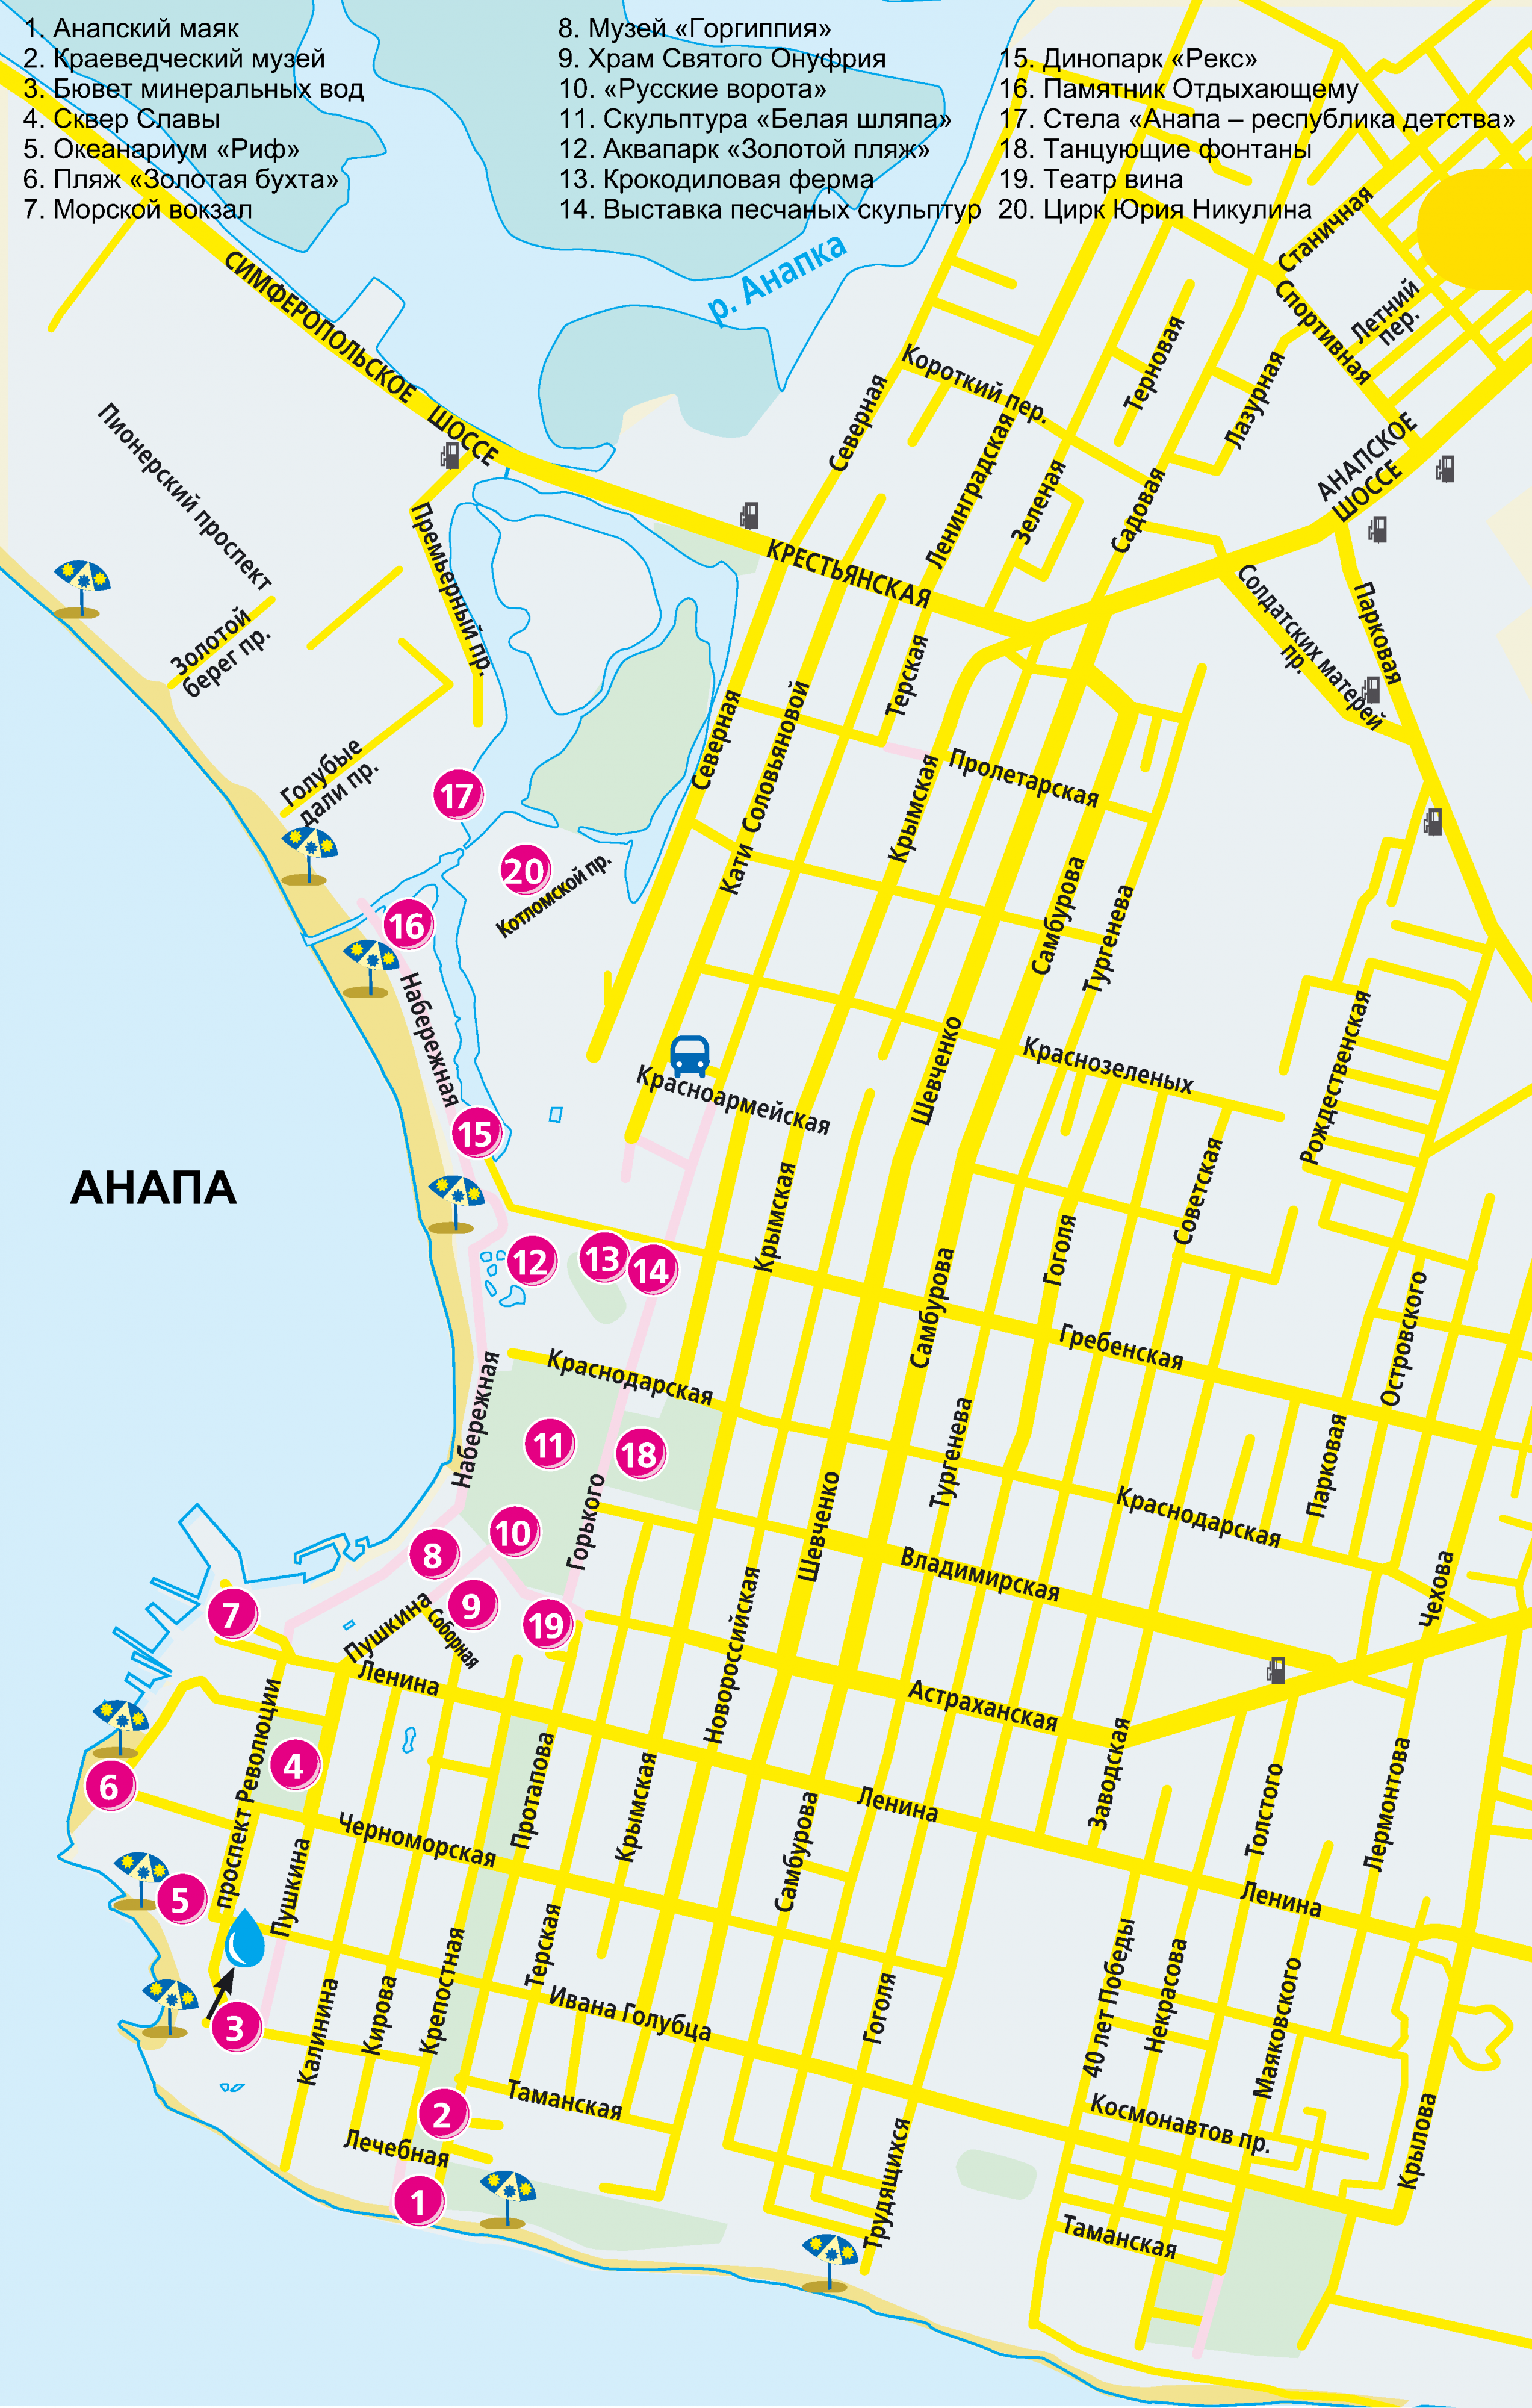 Схема города Анапы с главными достопримечательностями